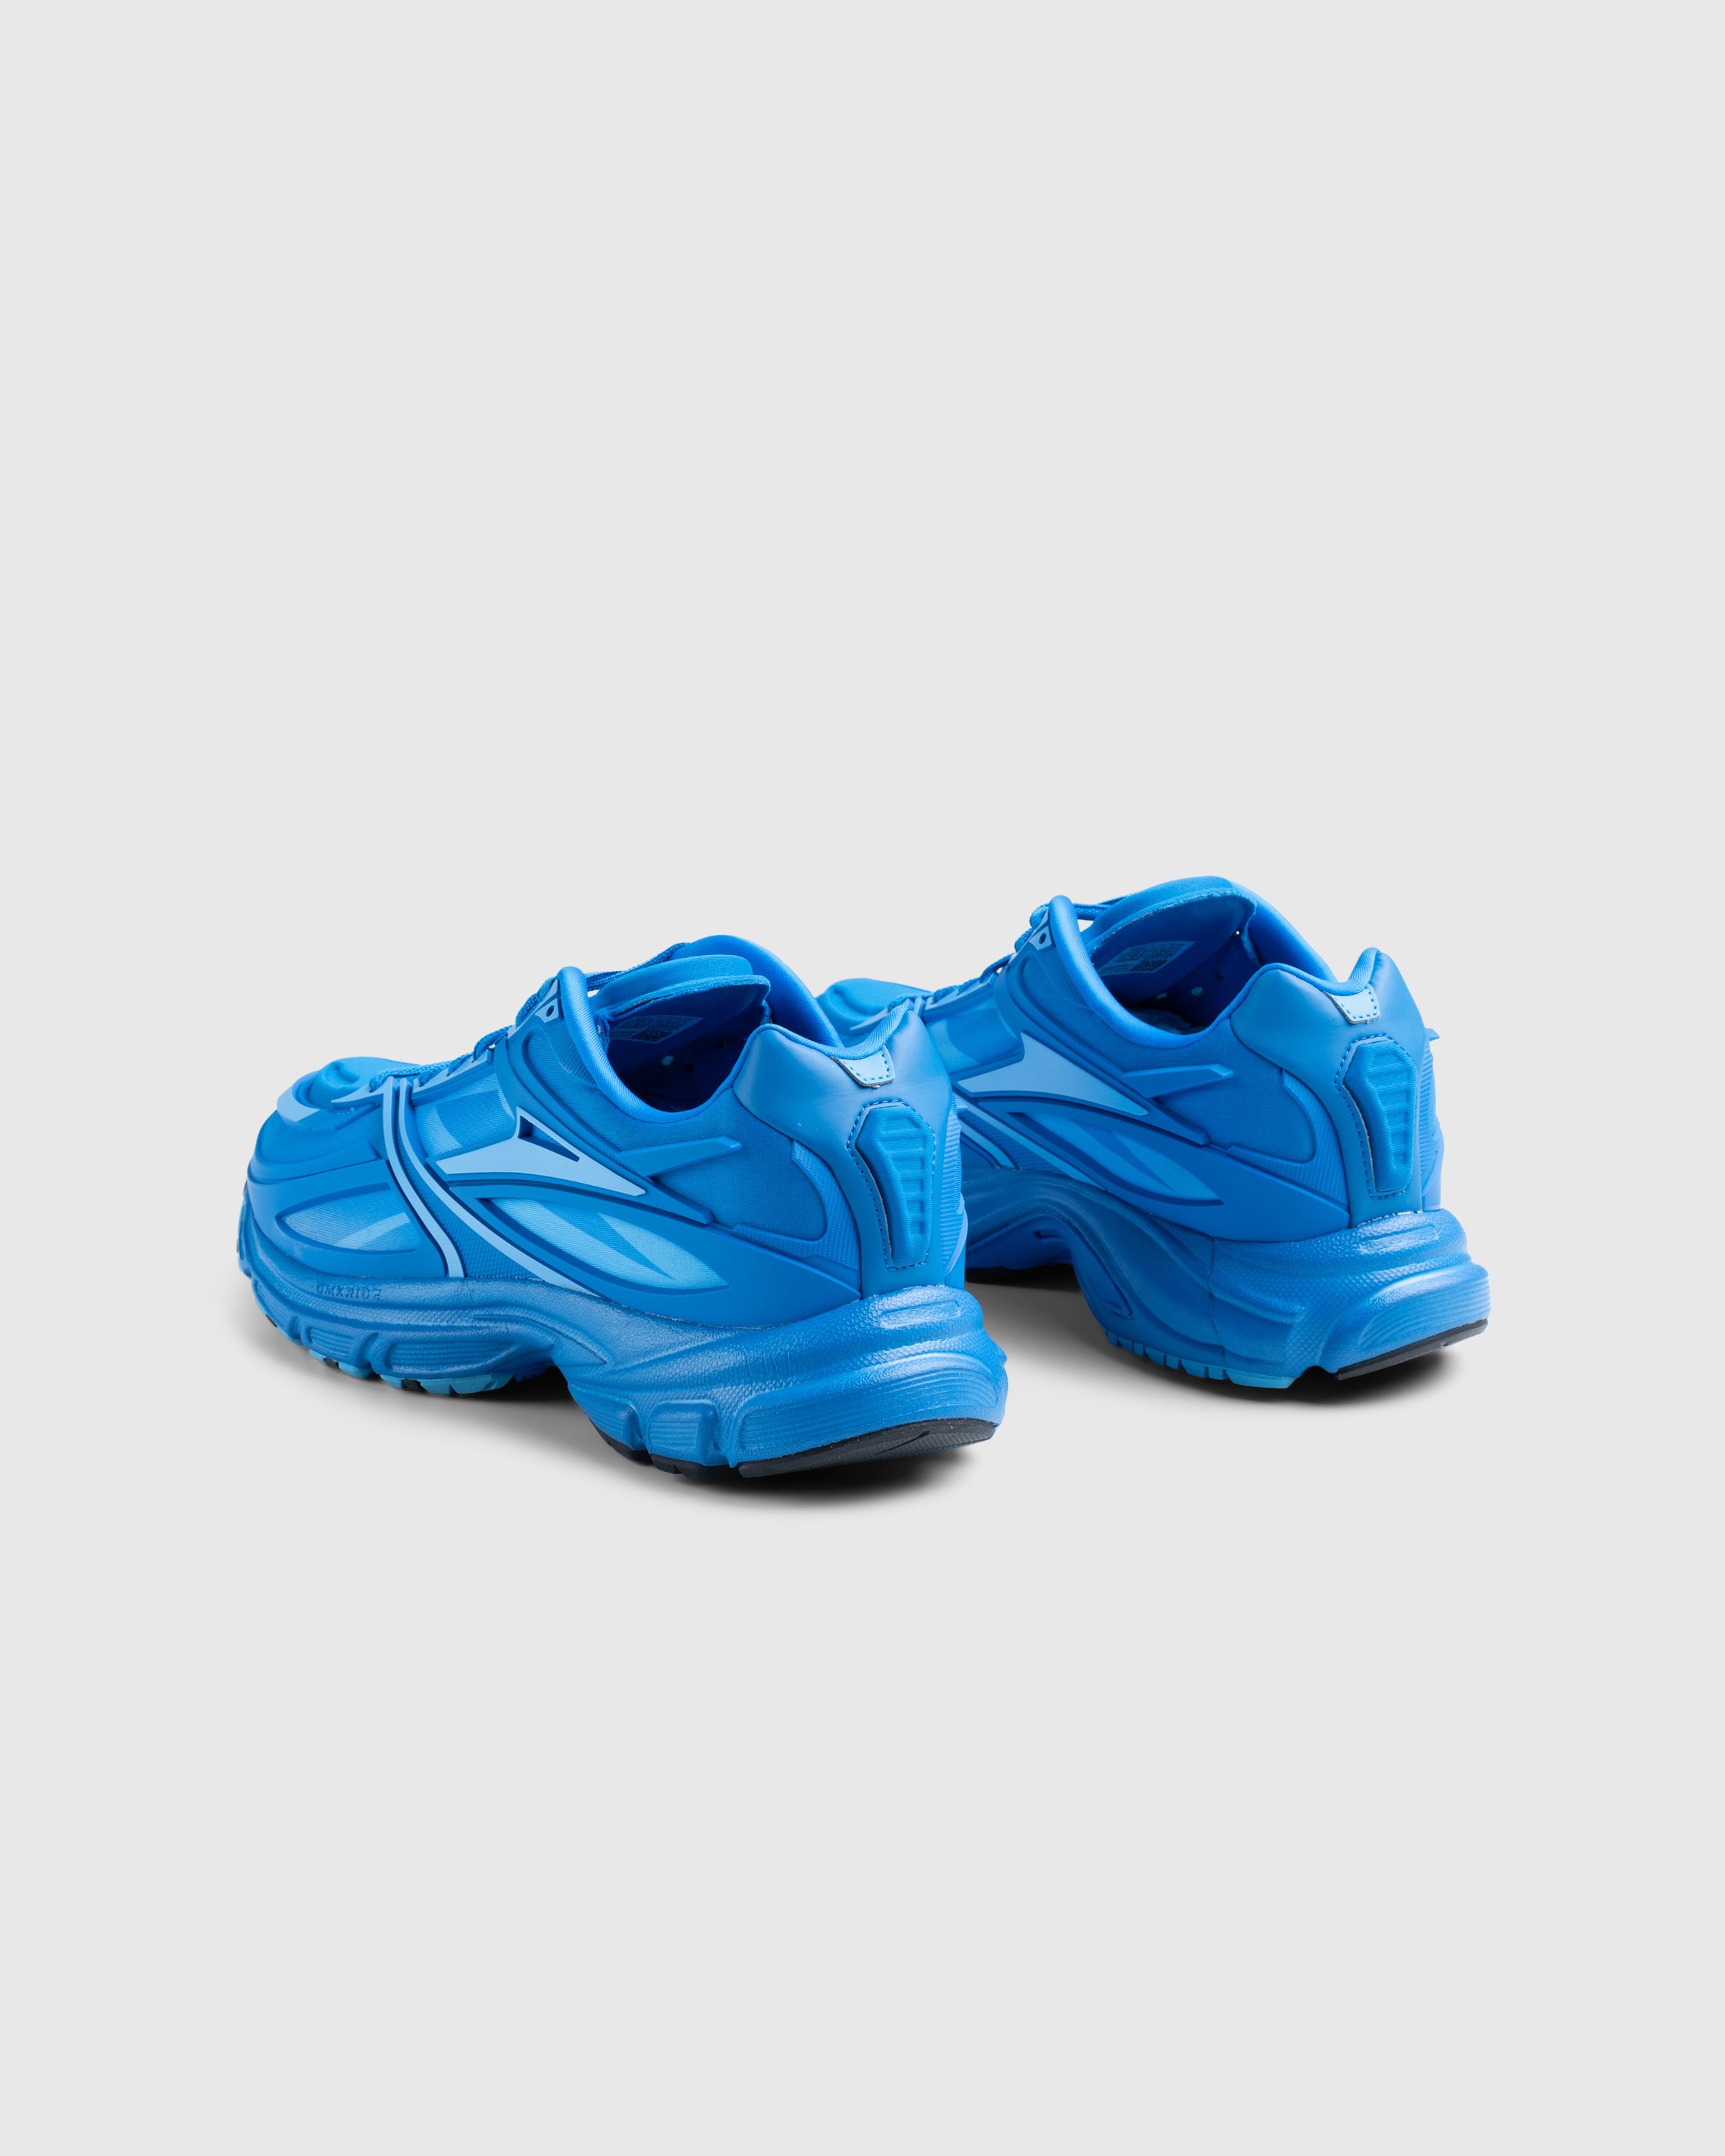 Reebok - PREMIER ROAD LIGHT BLUE/LIGHT BLUE - Footwear - Blue - Image 3